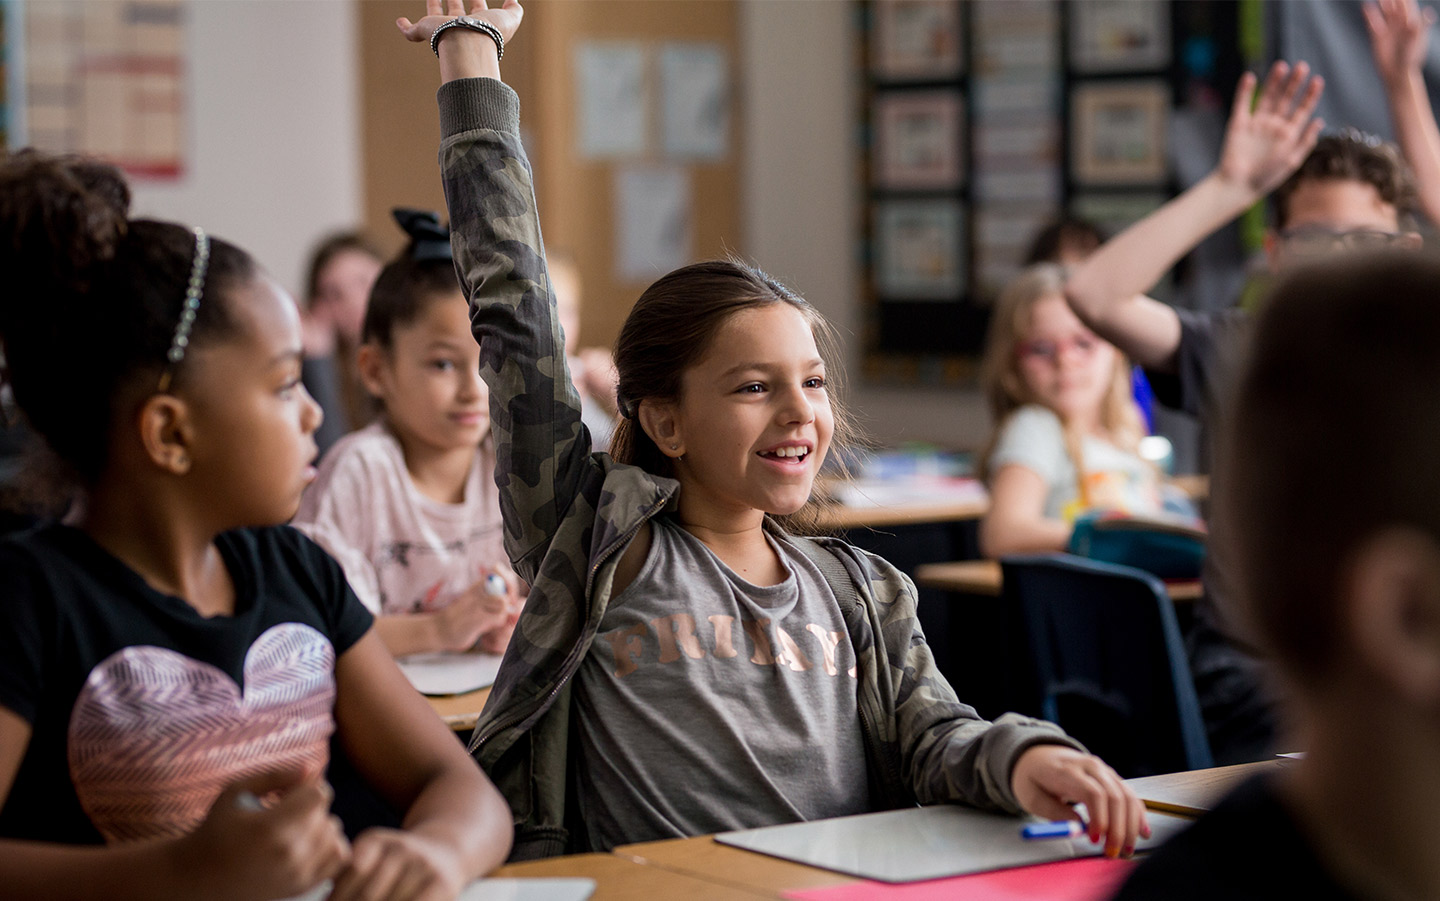 Cochlear implant kullanıcısı bir kız sınıfta elini kaldırmaktadır